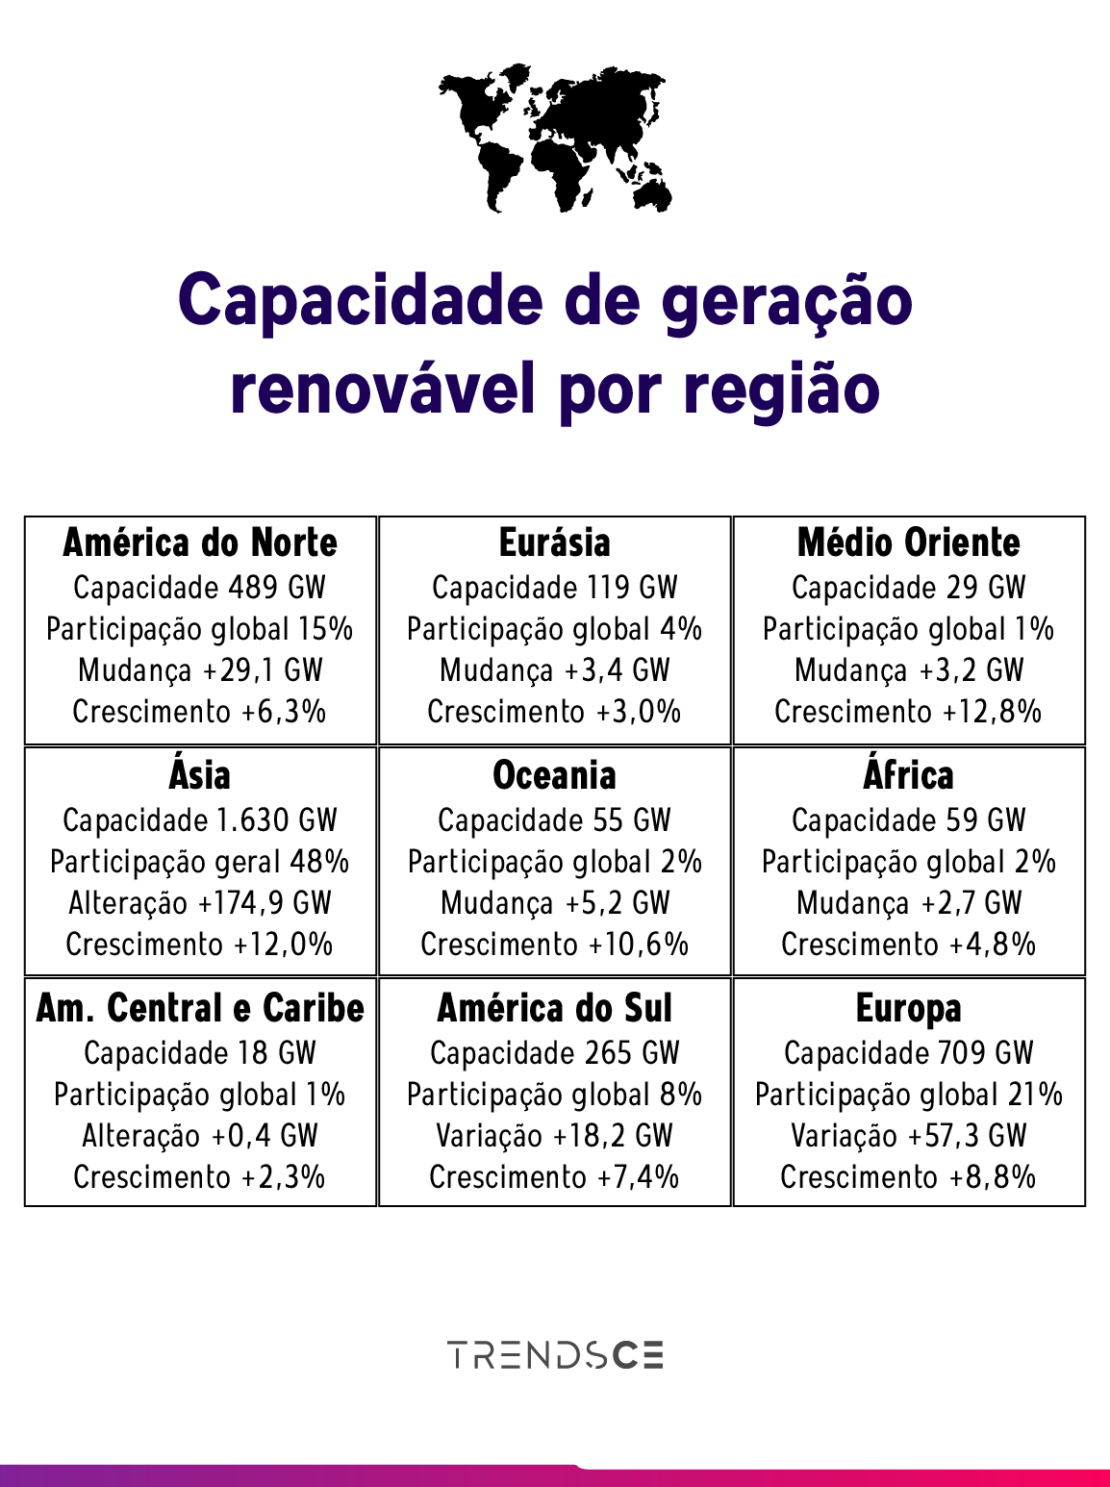 capacidade de geração de energias renováveis por região